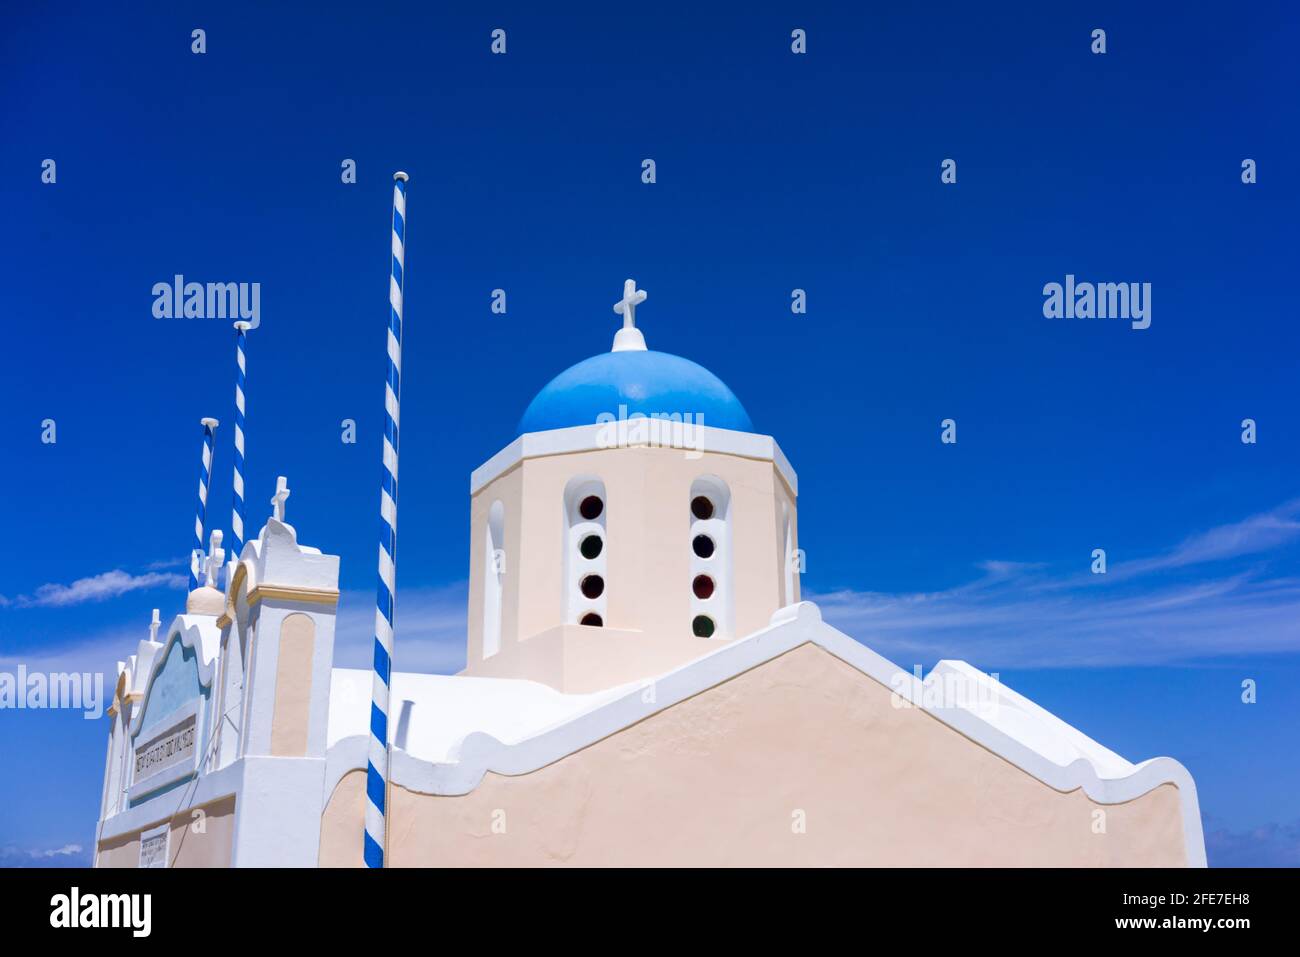 A church in Oia on the greek island of Santorini, Greece, set against a deep blue sky. Stock Photo